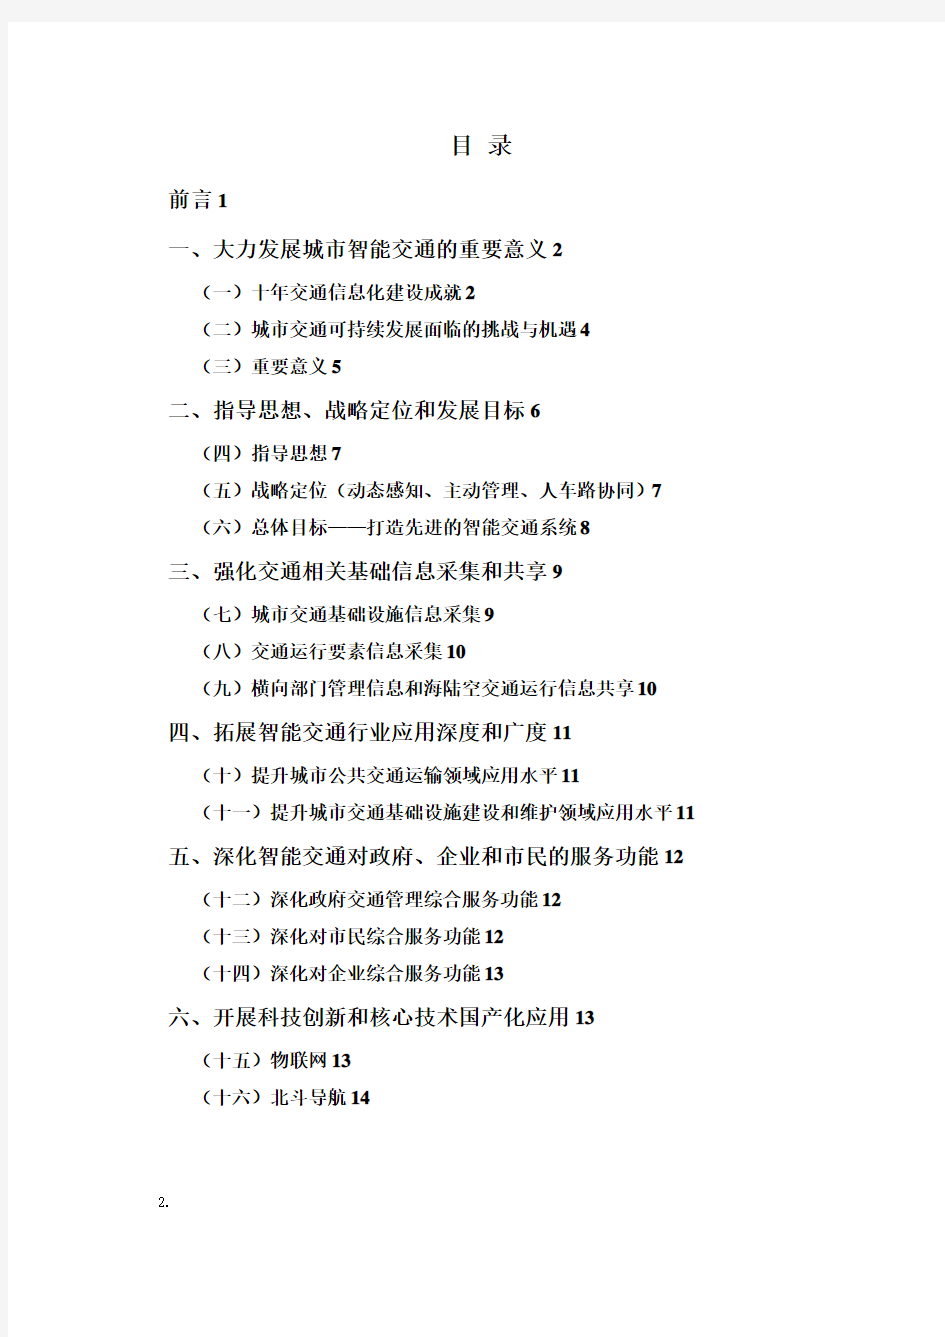 广州智能交通系统发展规划纲要20112015年